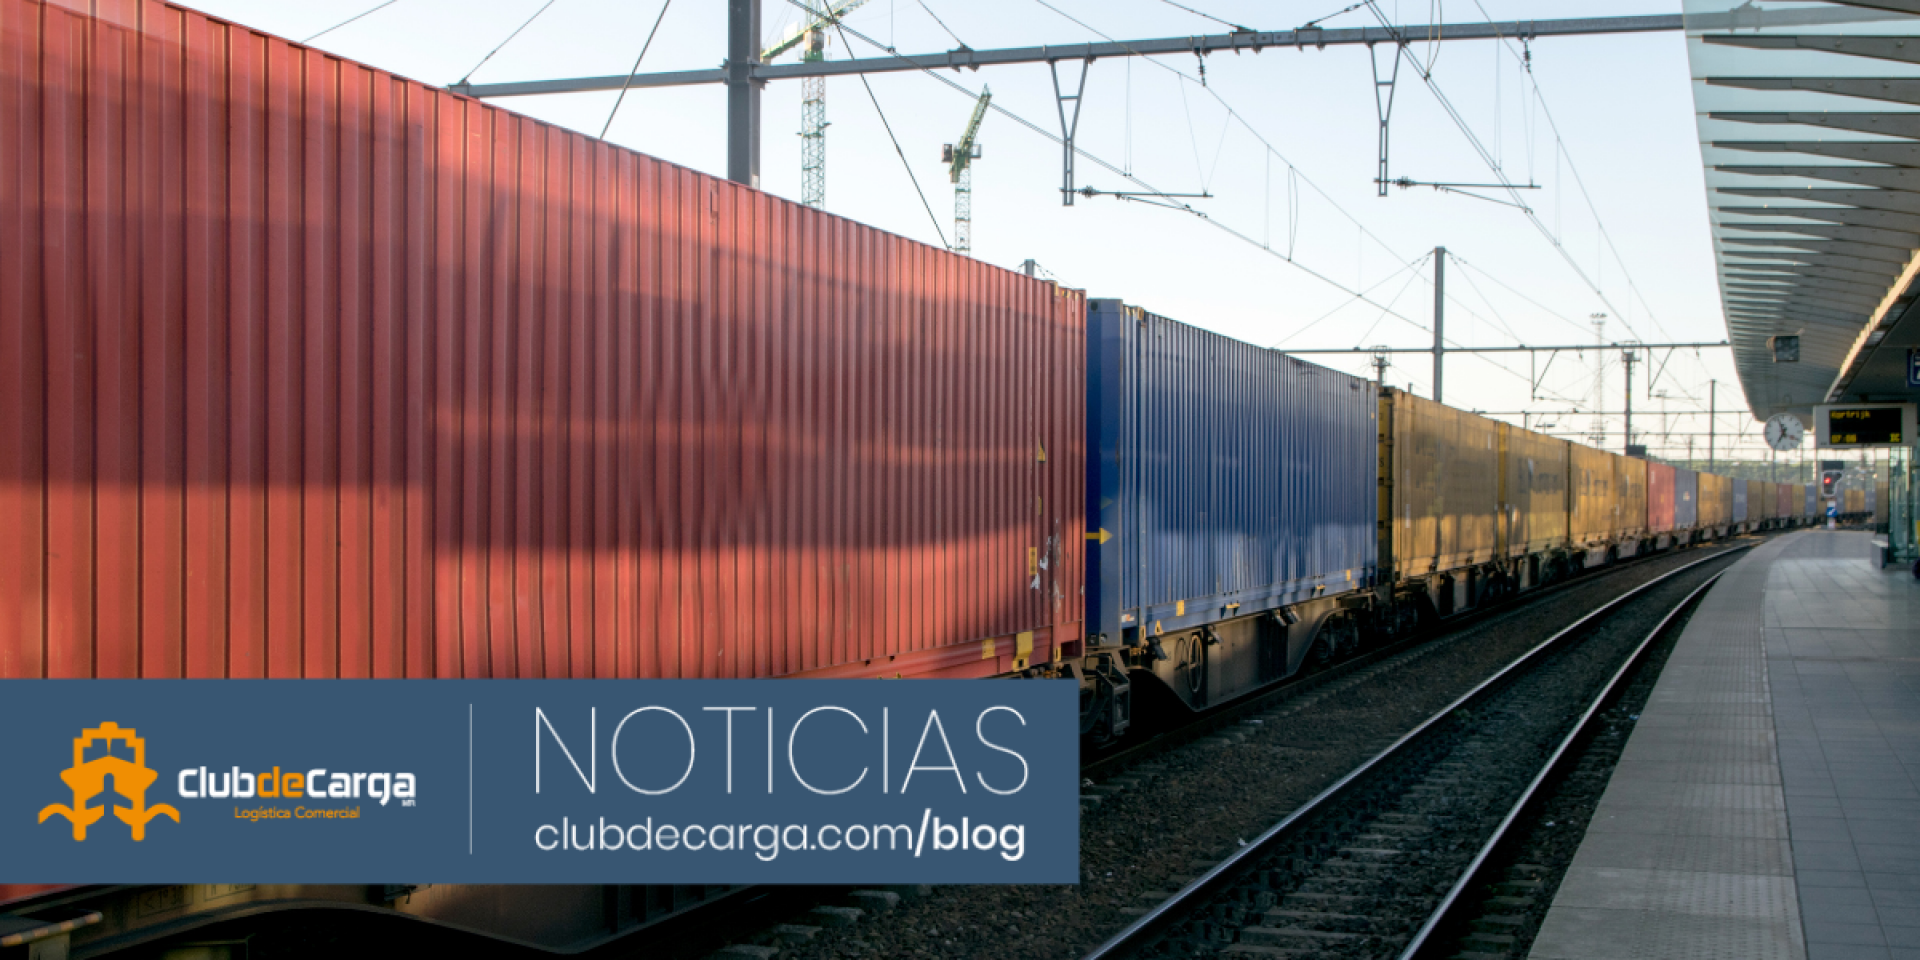 La carga vía ferrocarril aumenta en México